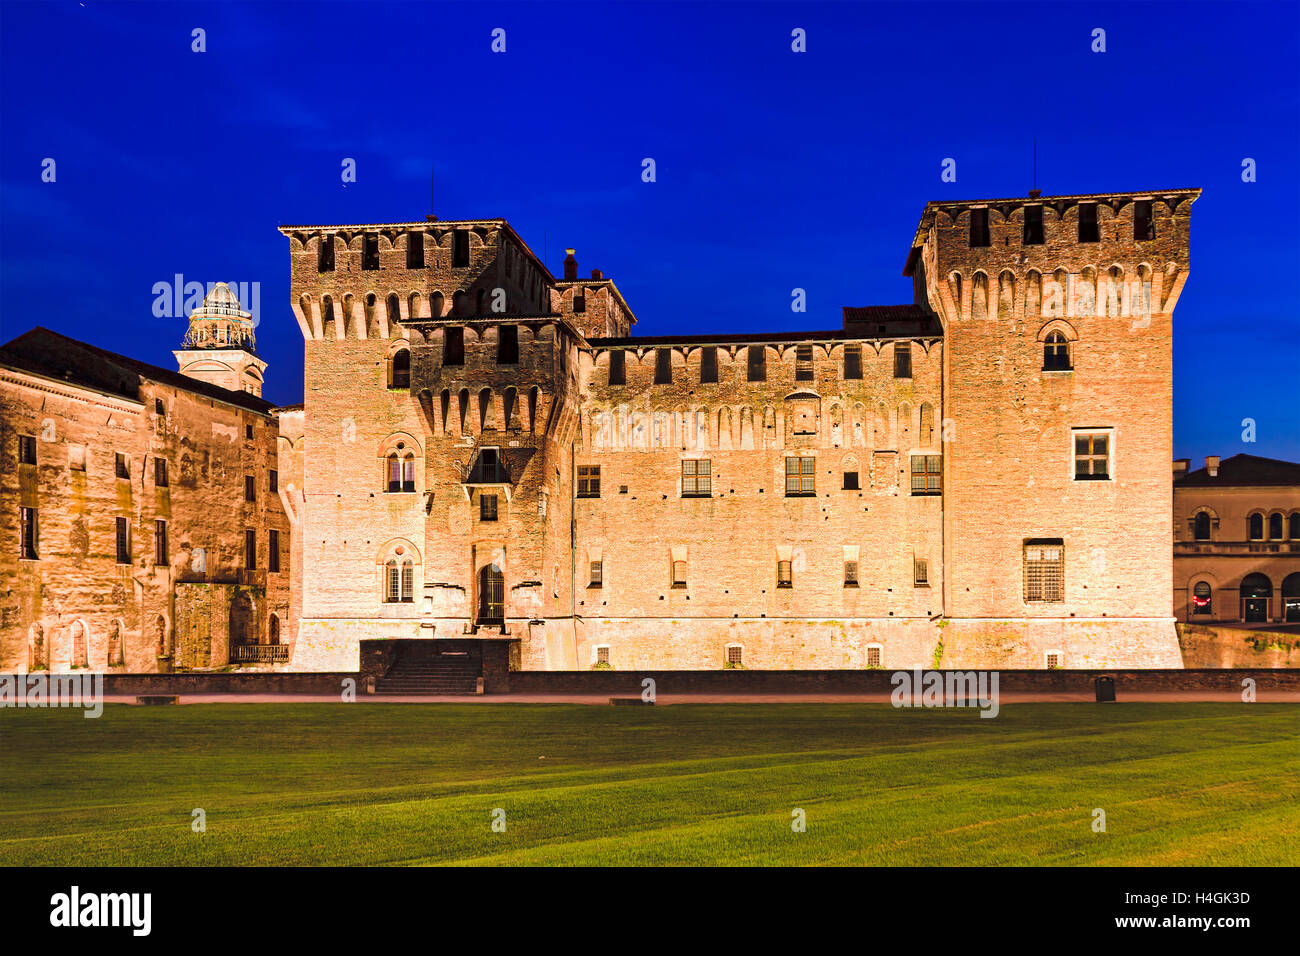 De puissantes tours de Palais Ducale château Saint George au coucher du soleil à Mantoue, Italie. Éclairées monument médiéval Banque D'Images